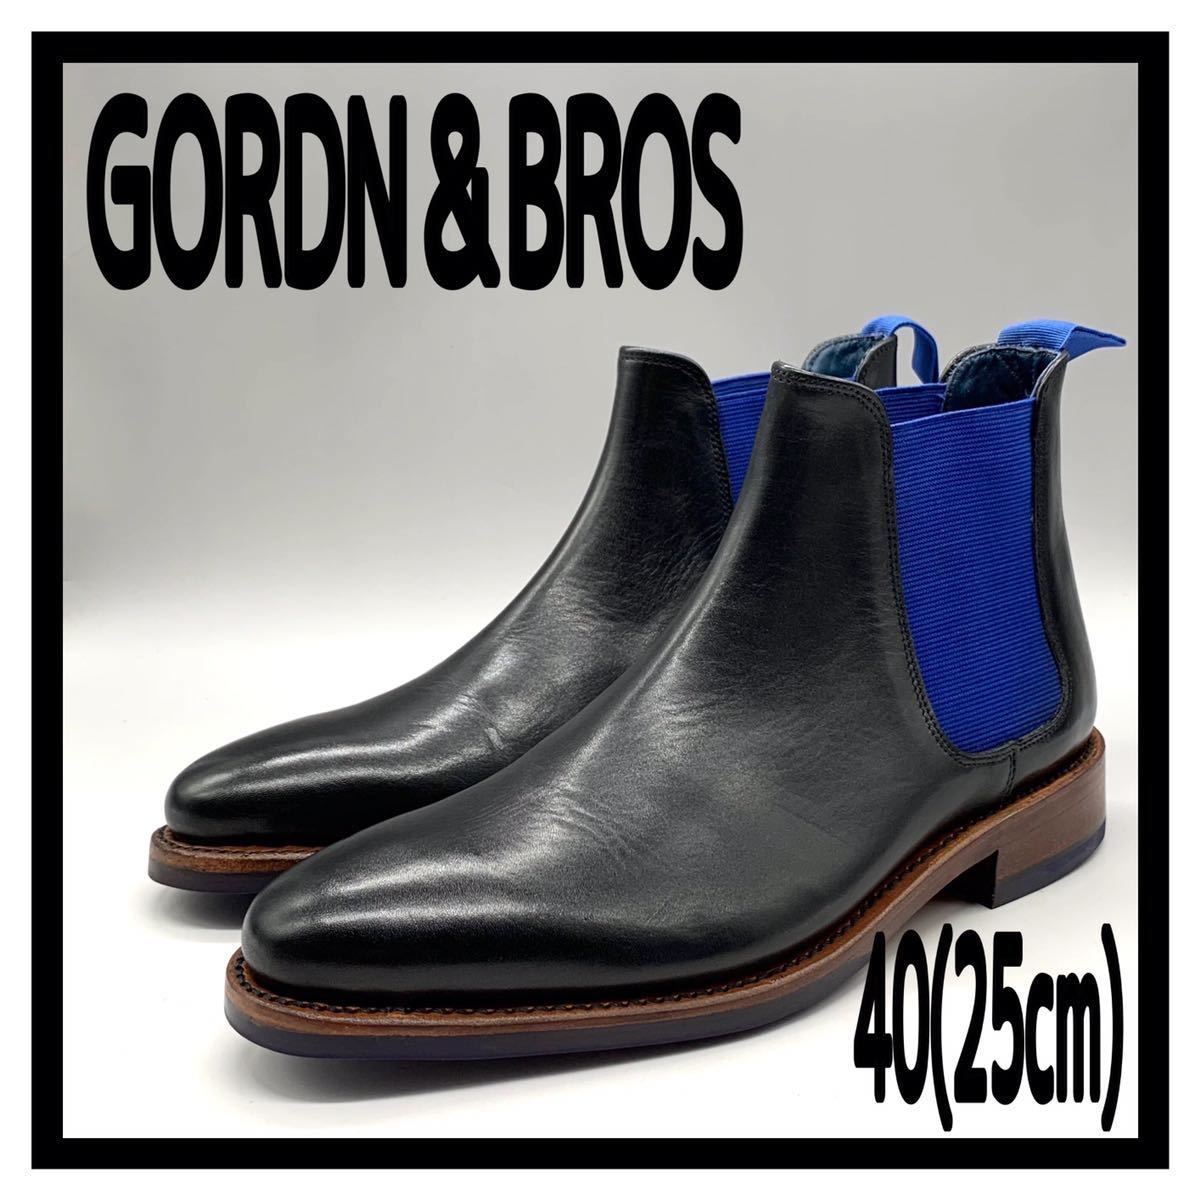 GORDN＆BROS (ゴードン＆ブロス) ドレスシューズ サイドゴアブーツ プレーントゥ ダイナイトソール レザー ブラック ブルー 40 25cm 革靴